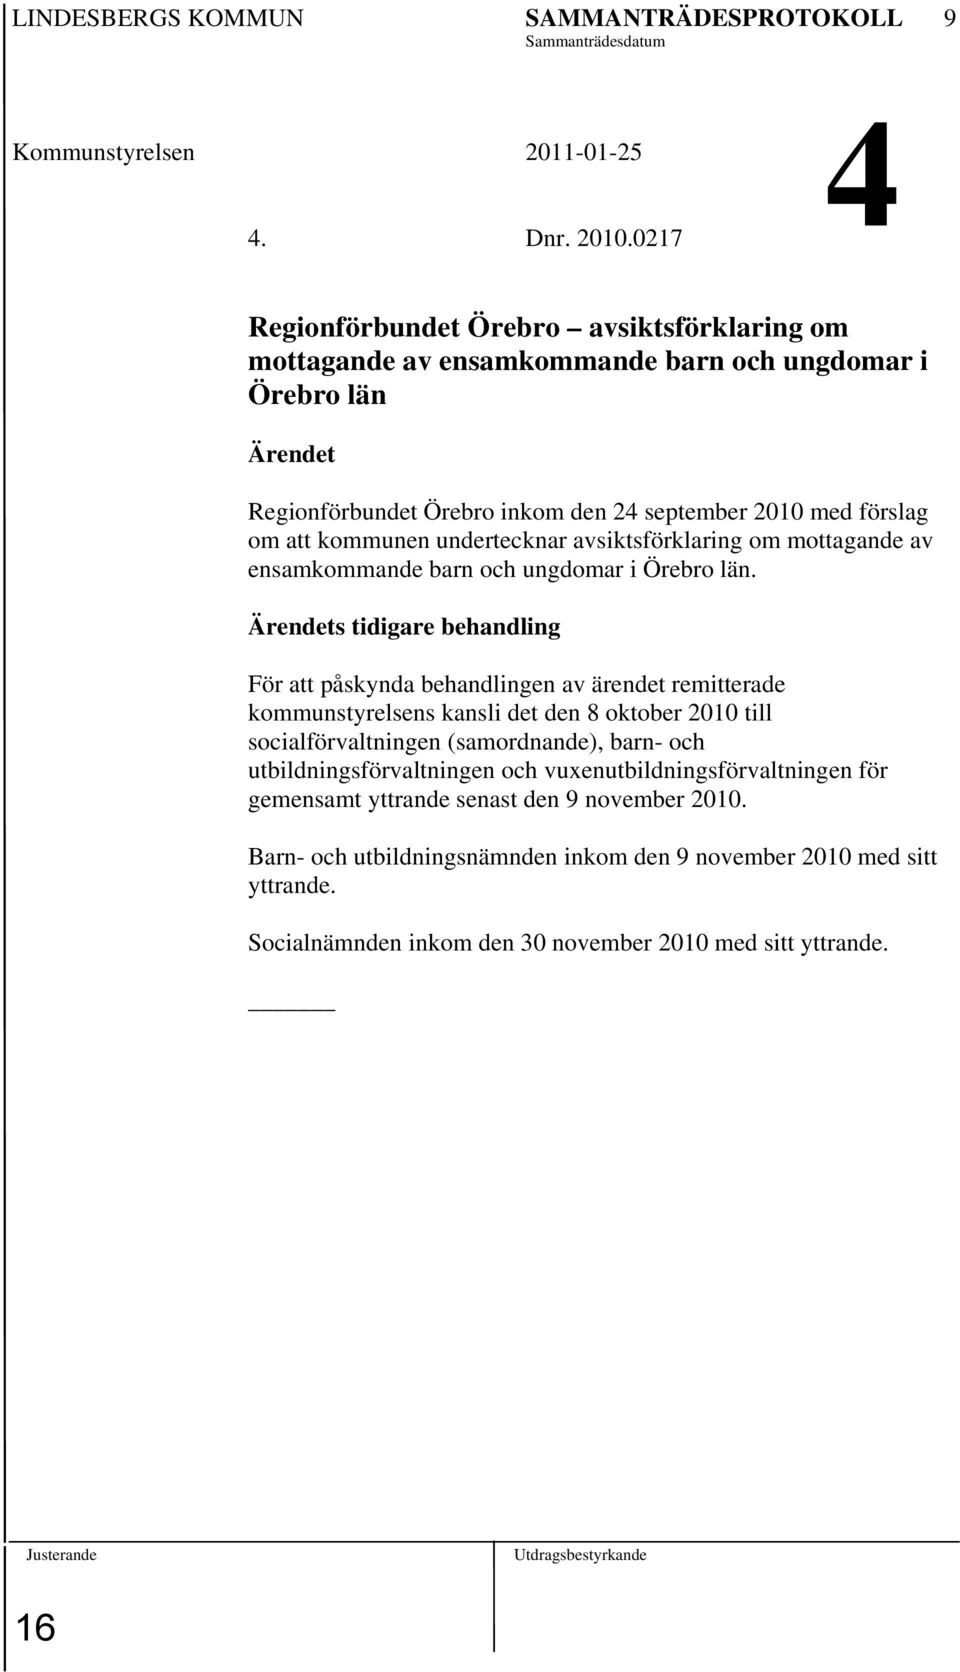 undertecknar avsiktsförklaring om mottagande av ensamkommande barn och ungdomar i Örebro län.